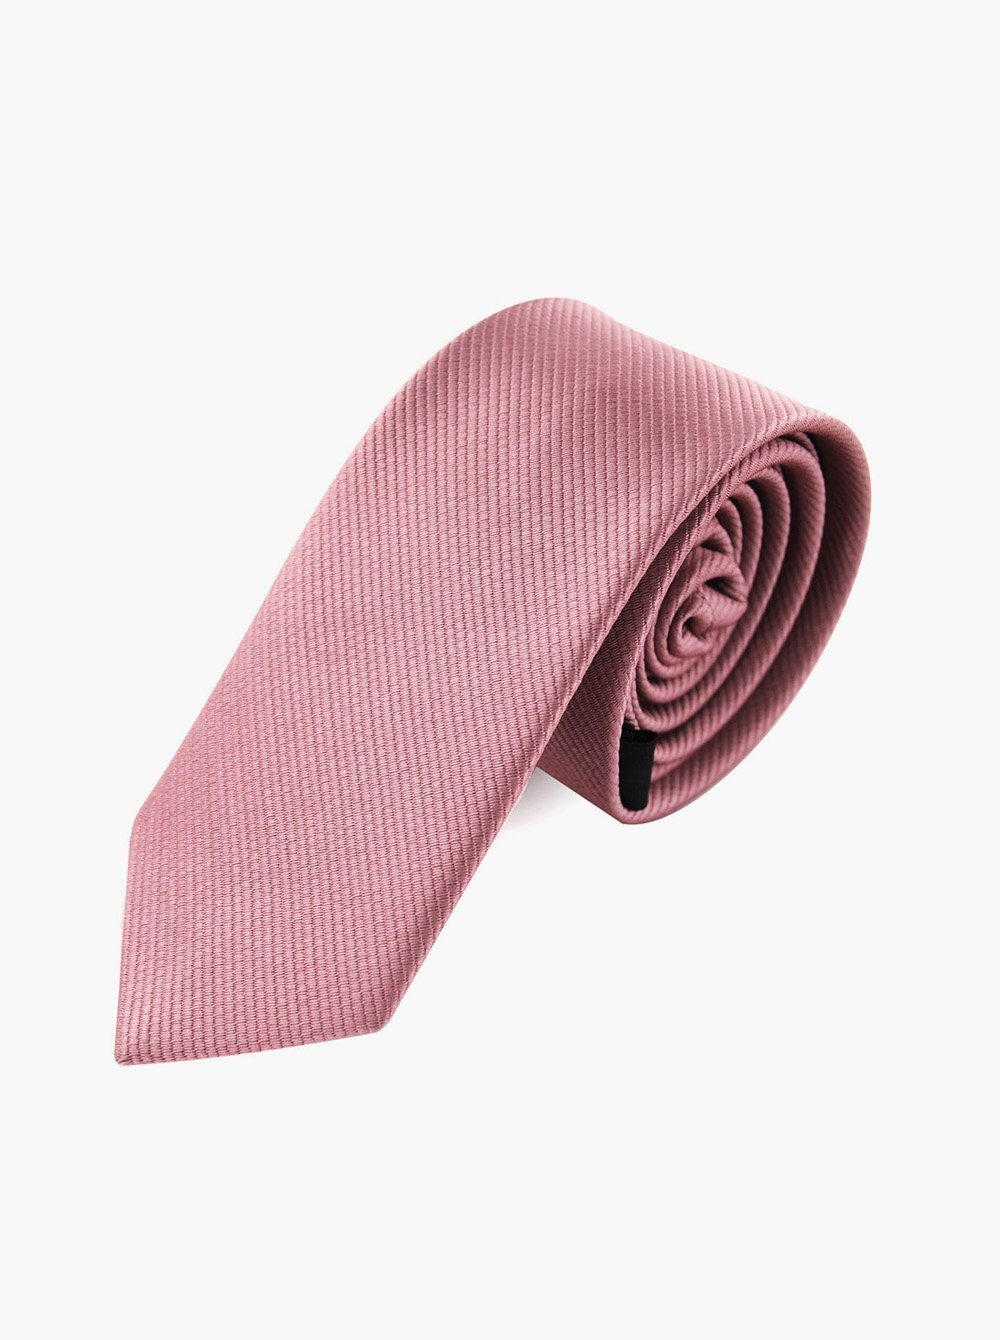 axy Krawatte Herren Krawatte 5.0 cm breit einfarbig perfektes Geschenk Seidenkrawatte, mit Geschenkbox Altrosa